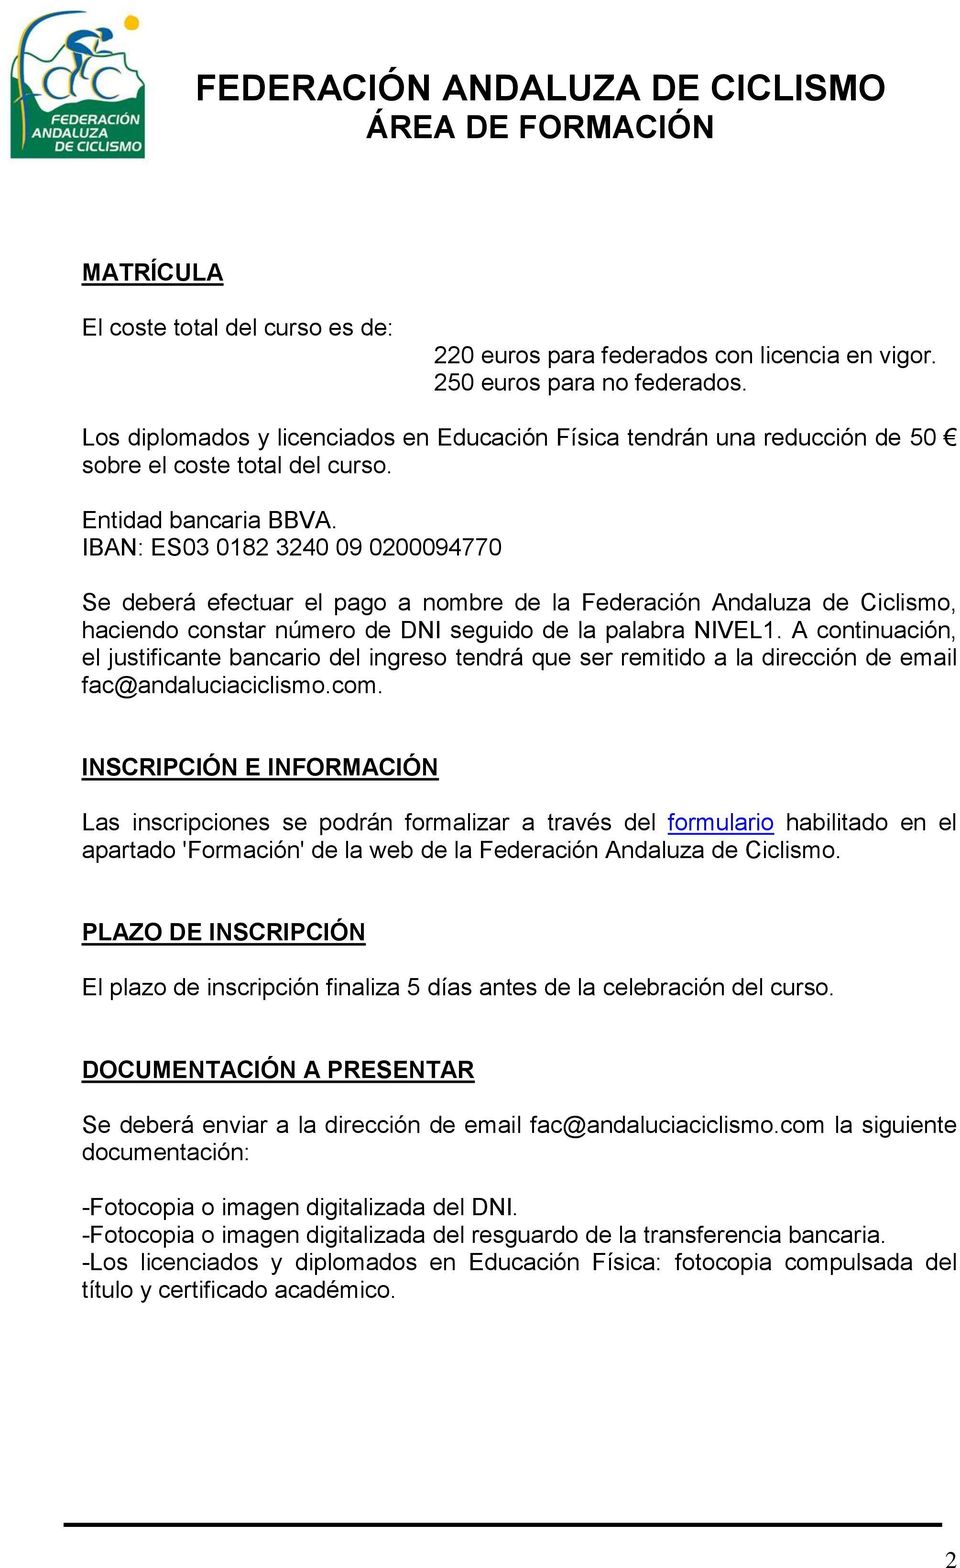 IBAN: ES03 0182 3240 09 0200094770 Se deberá efectuar el pago a nombre de la Federación Andaluza de Ciclismo, haciendo constar número de DNI seguido de la palabra NIVEL1.